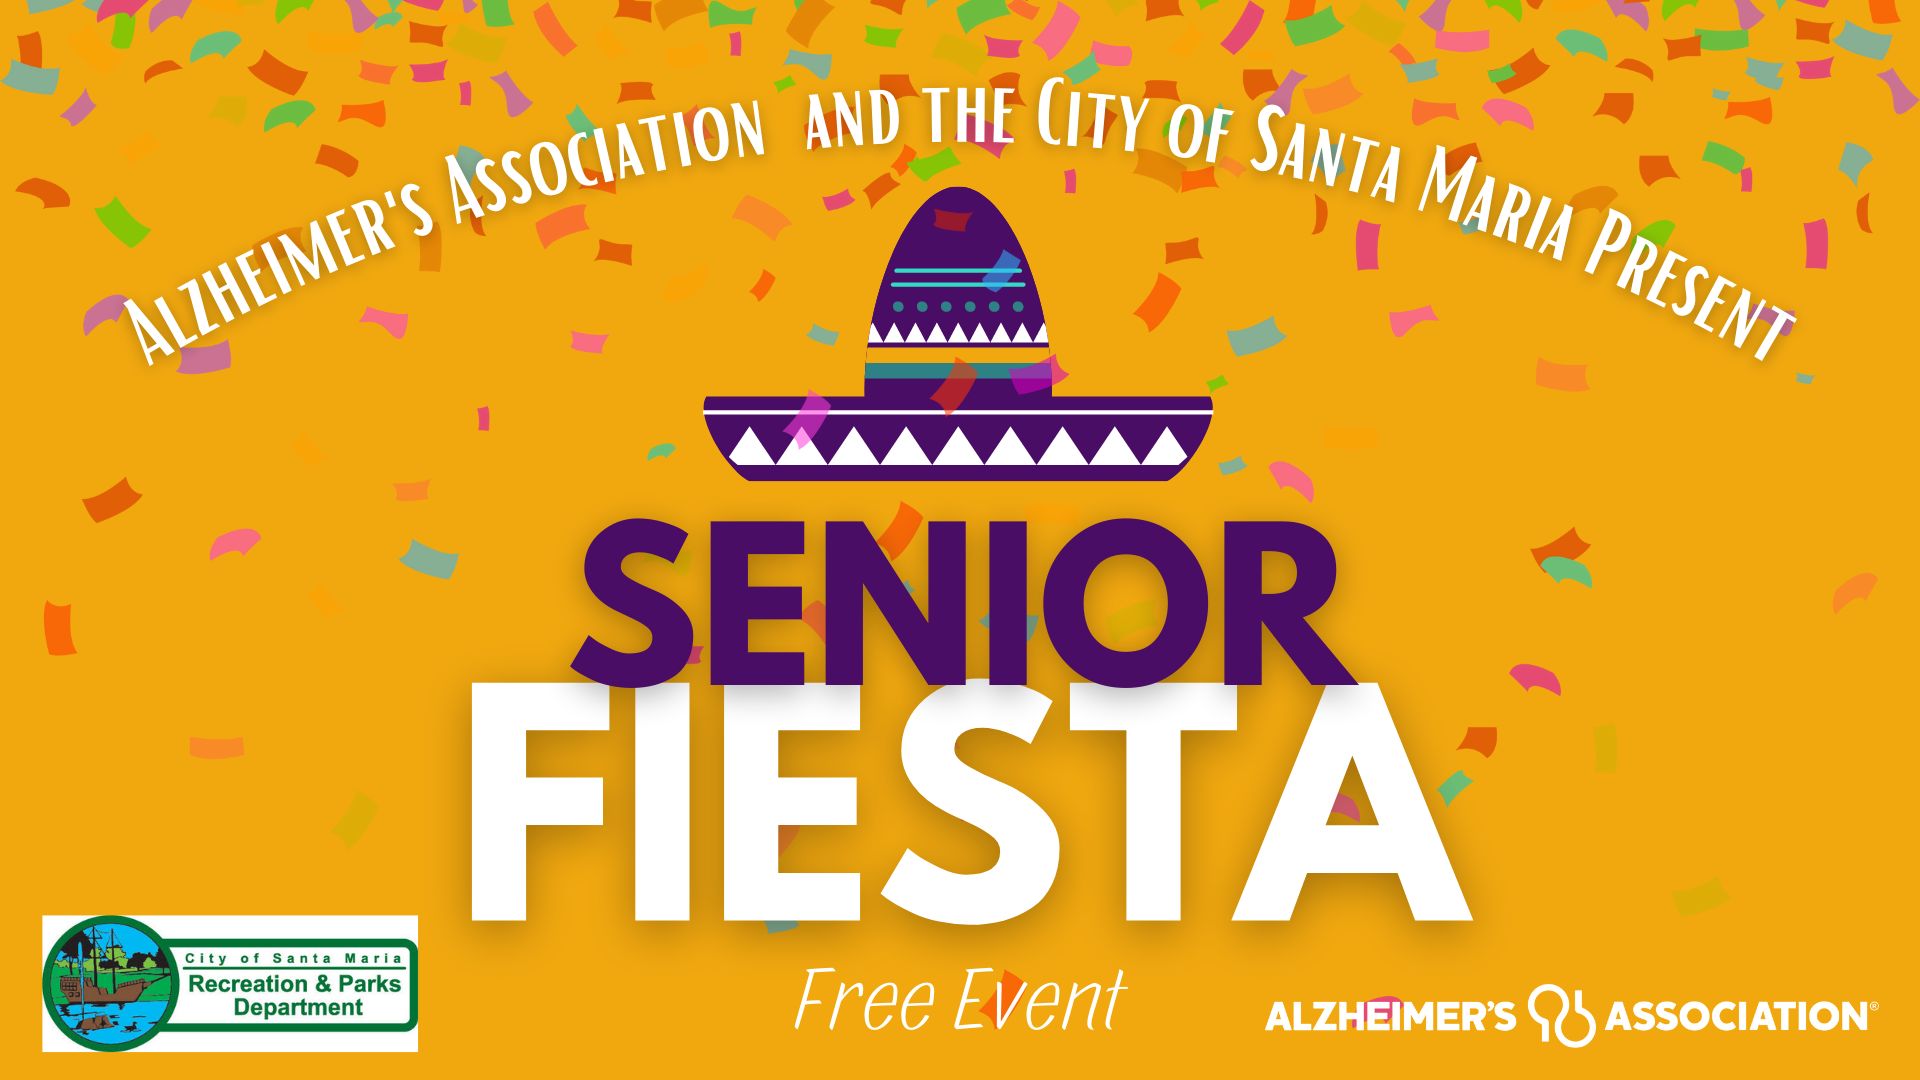 Alzheimer's Association Senior Fiesta, Santa Maria, California, United States